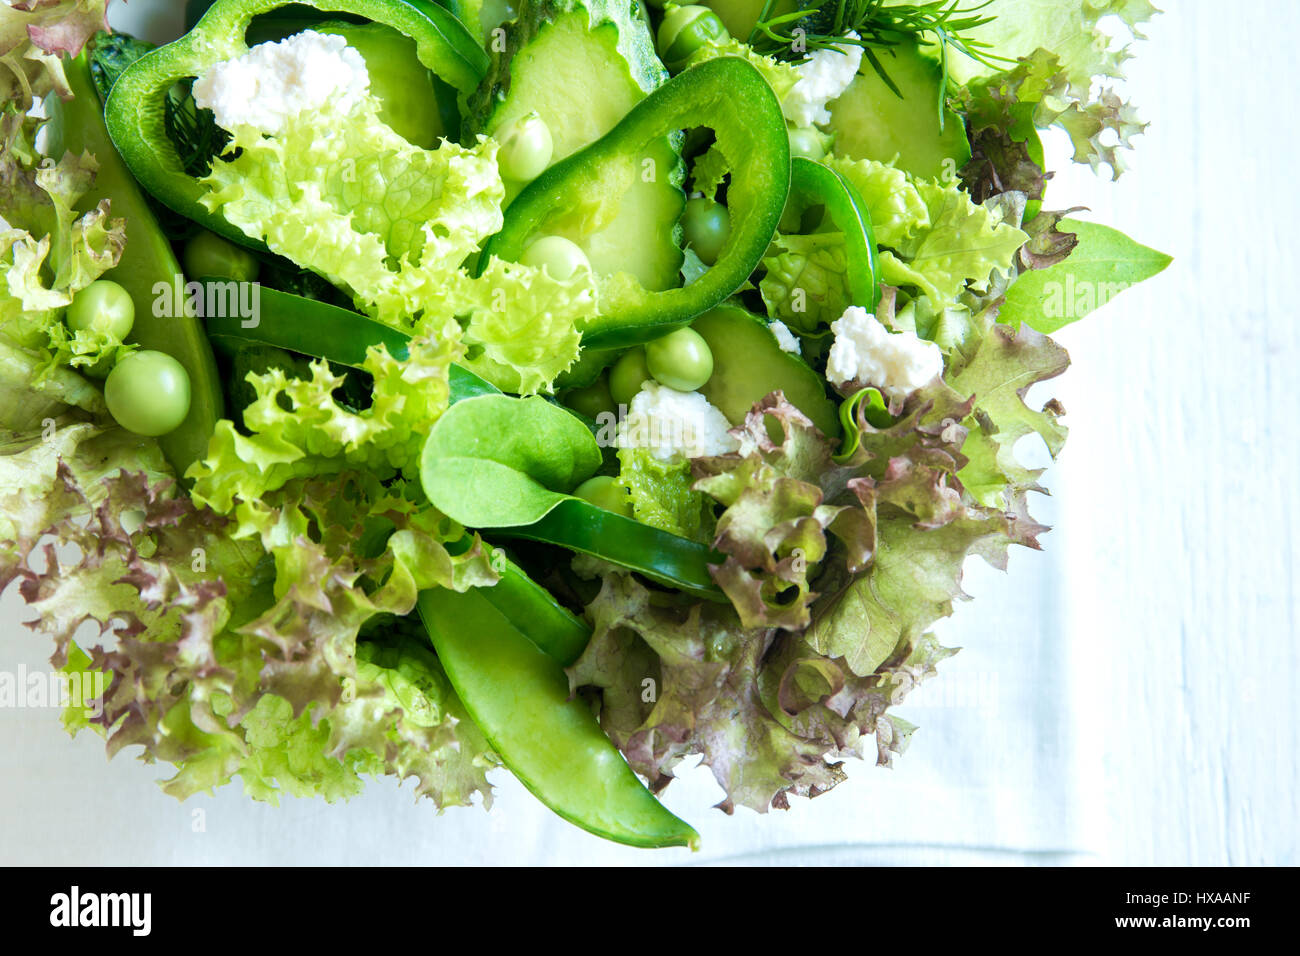 Organico verde mista insalata di verdure con formaggio feta e piselli primavera nella ciotola di legno close up - Dieta sana Organica Vegana cibo vegetariano insalata di pasto Foto Stock